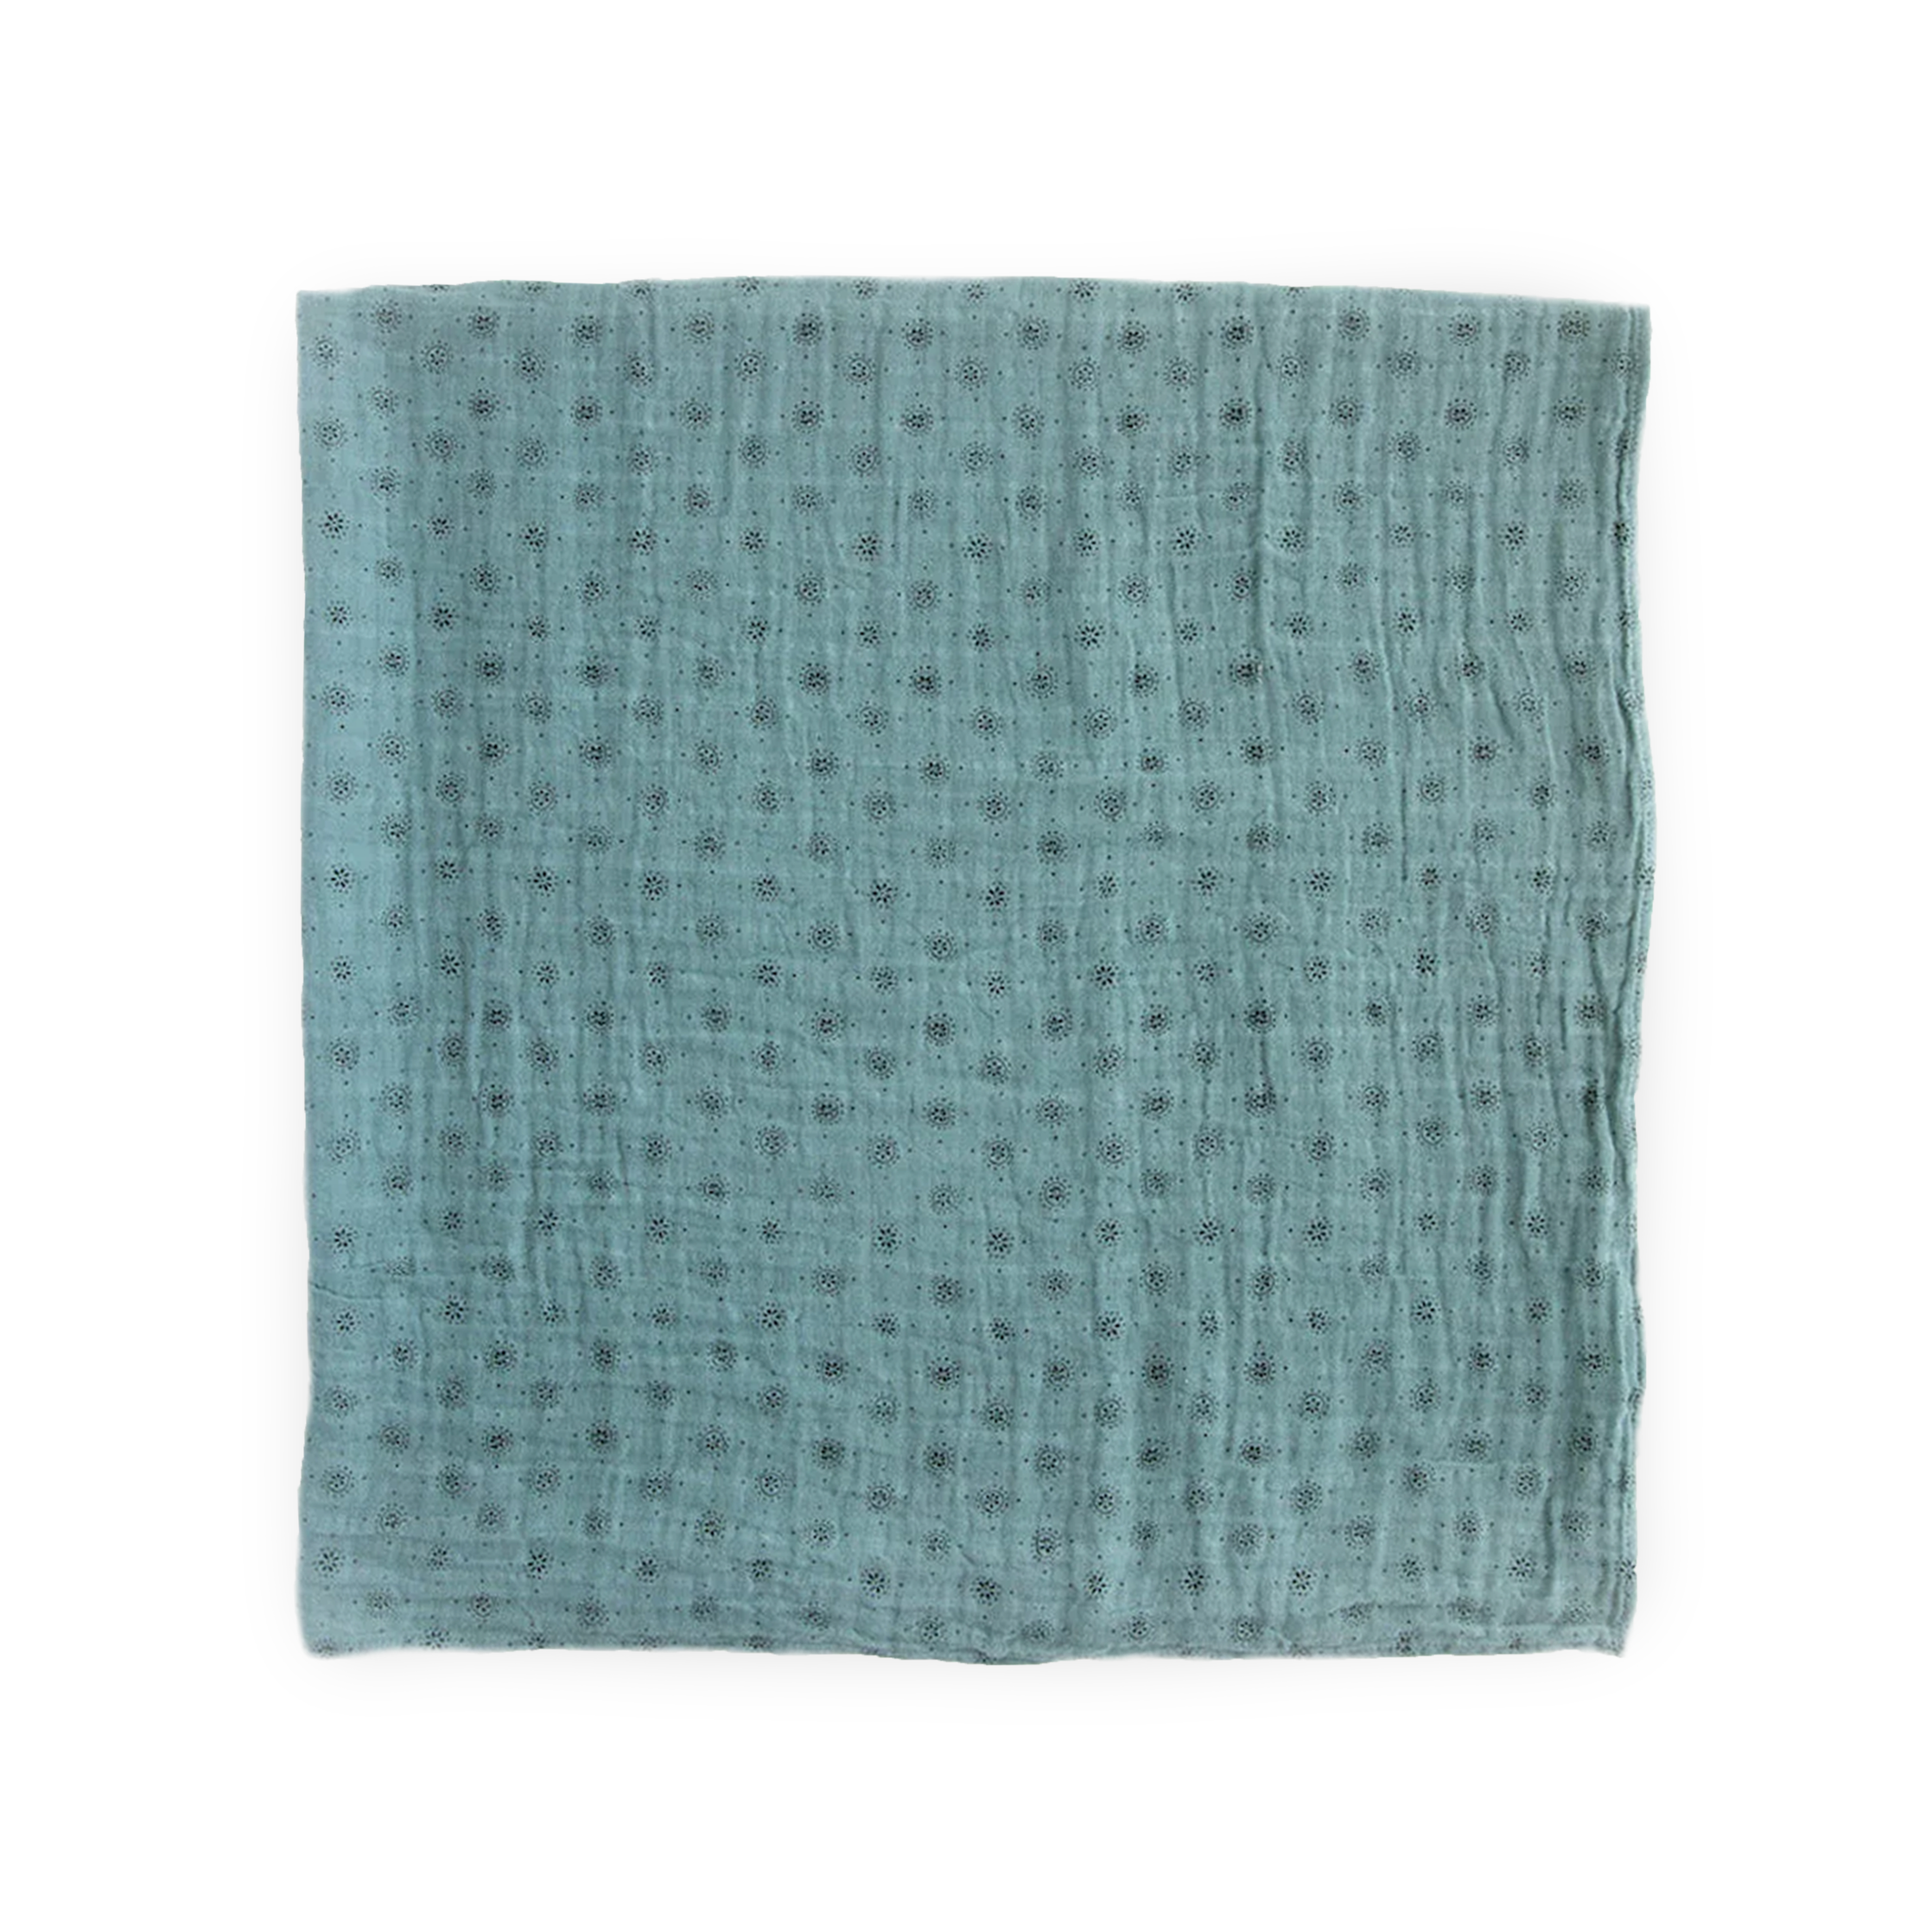 Cotton Muslin Swaddle Blanket 3 Pack - Vintage Floral